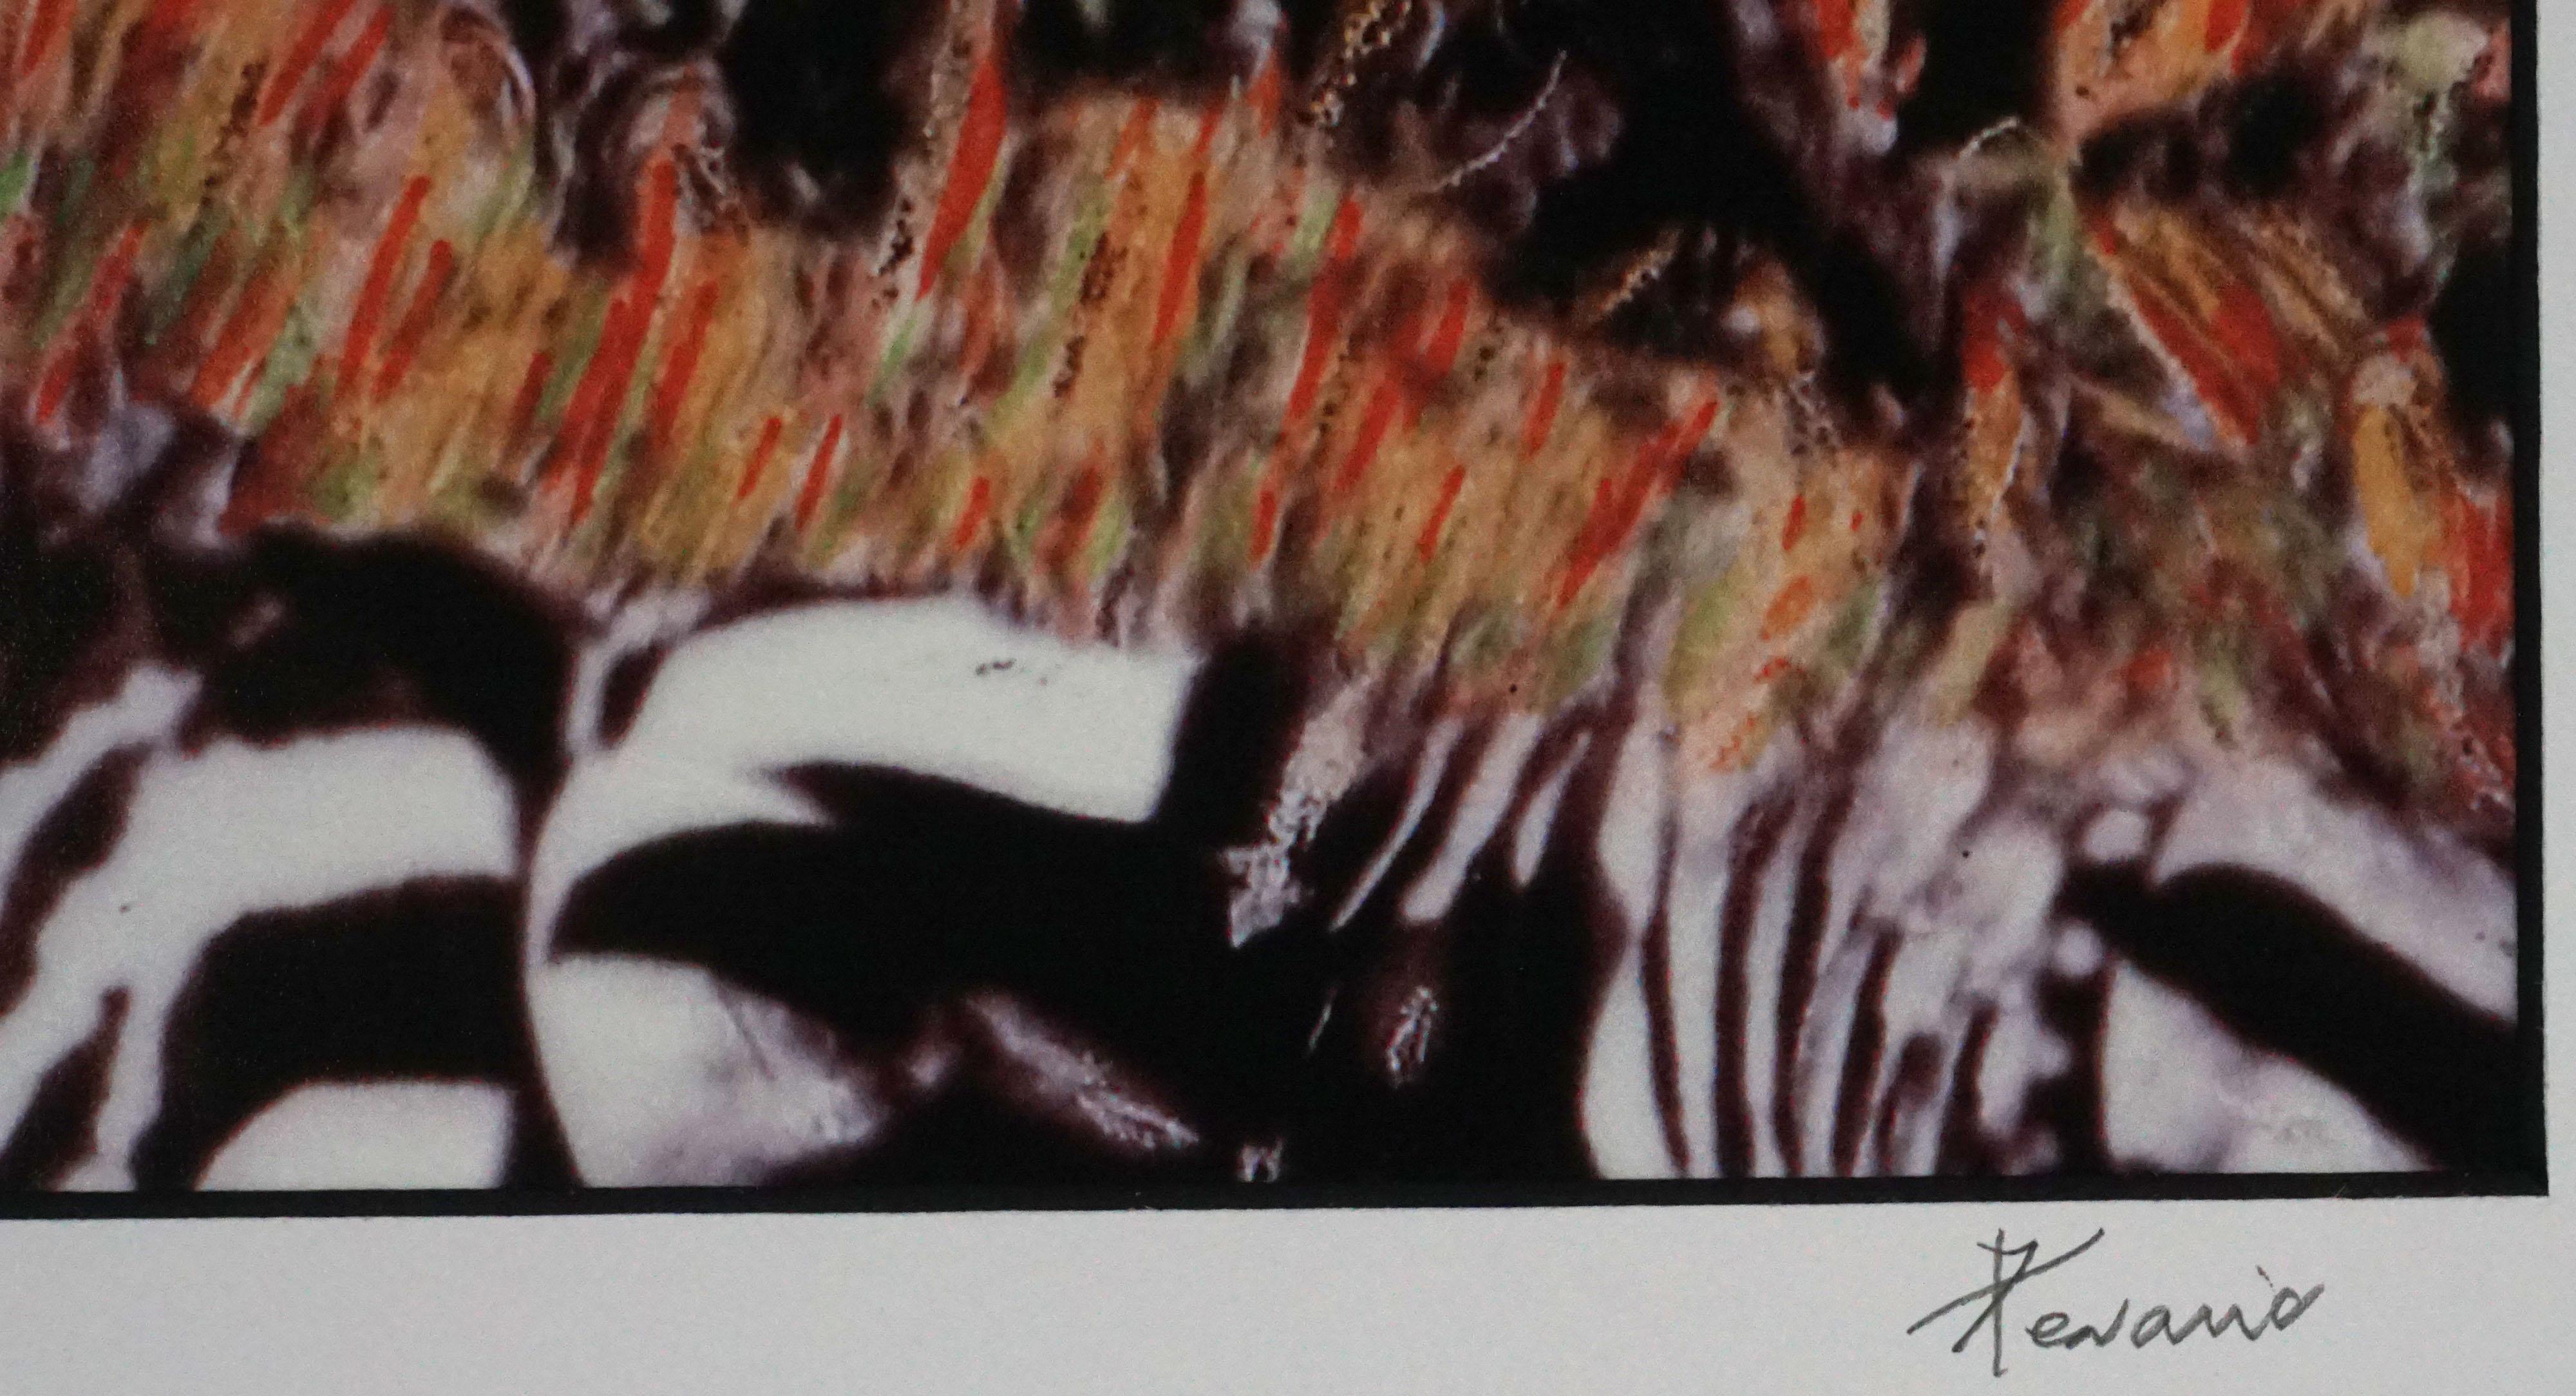 Abstrahierte Fotografie von Zebras mit lebhaften Farben in limitierter Auflage von Ken Dorr (Amerikaner, 20. Jahrhundert), ca. 2000. #10/250. Signiert und nummeriert am unteren Rand der Matte. Präsentiert in einem schwarzen Metallrahmen. Bildgröße: